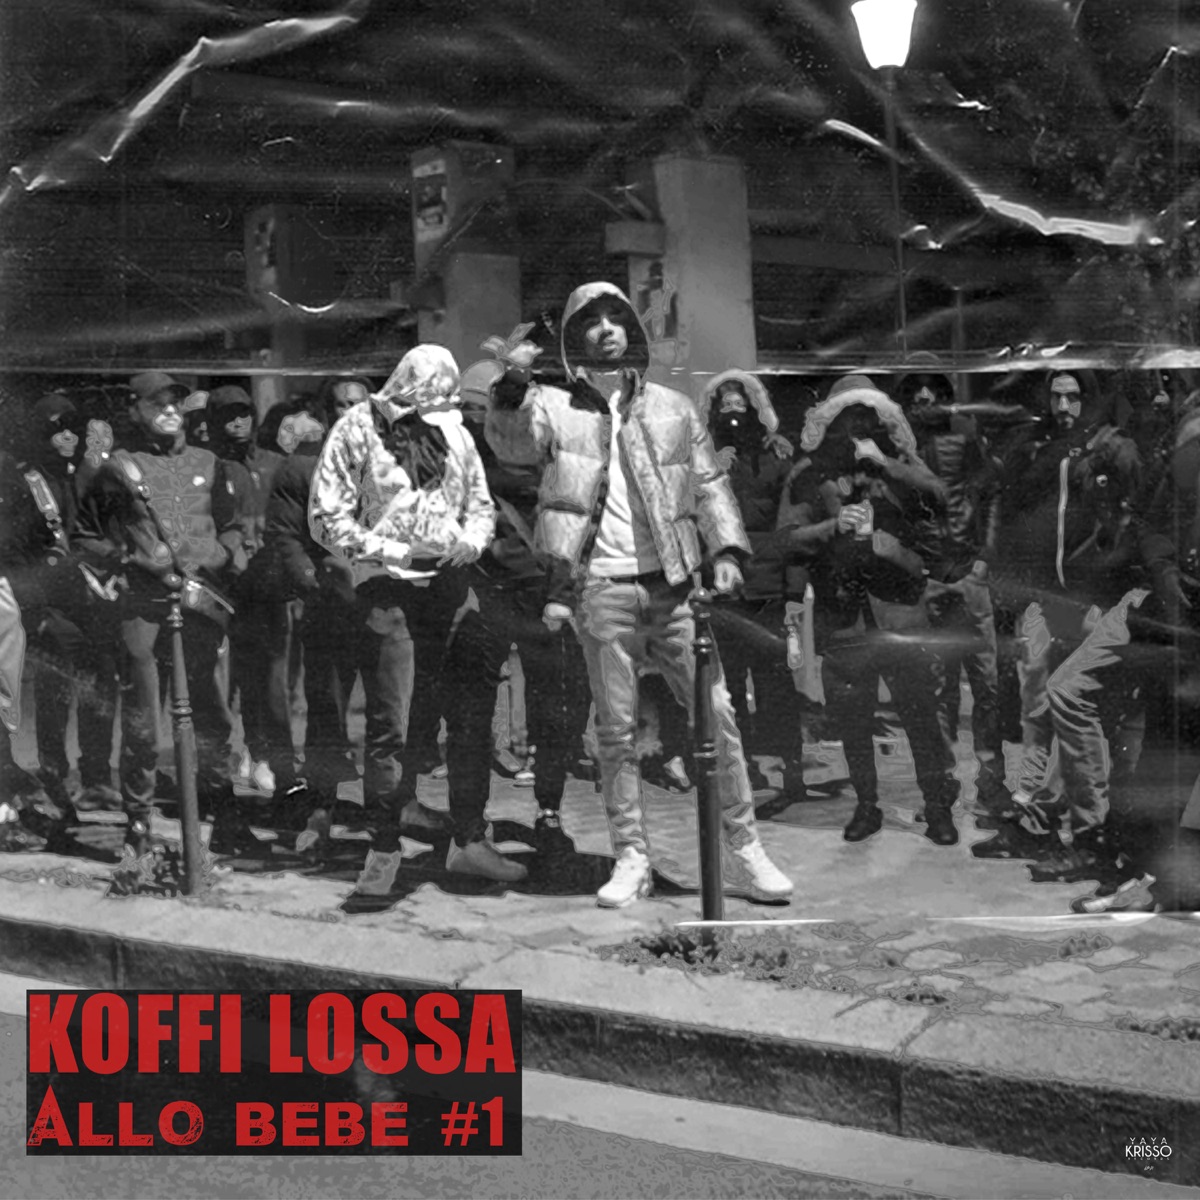 Allo Bébé #1 - Single par Koffi Lossa sur Apple Music